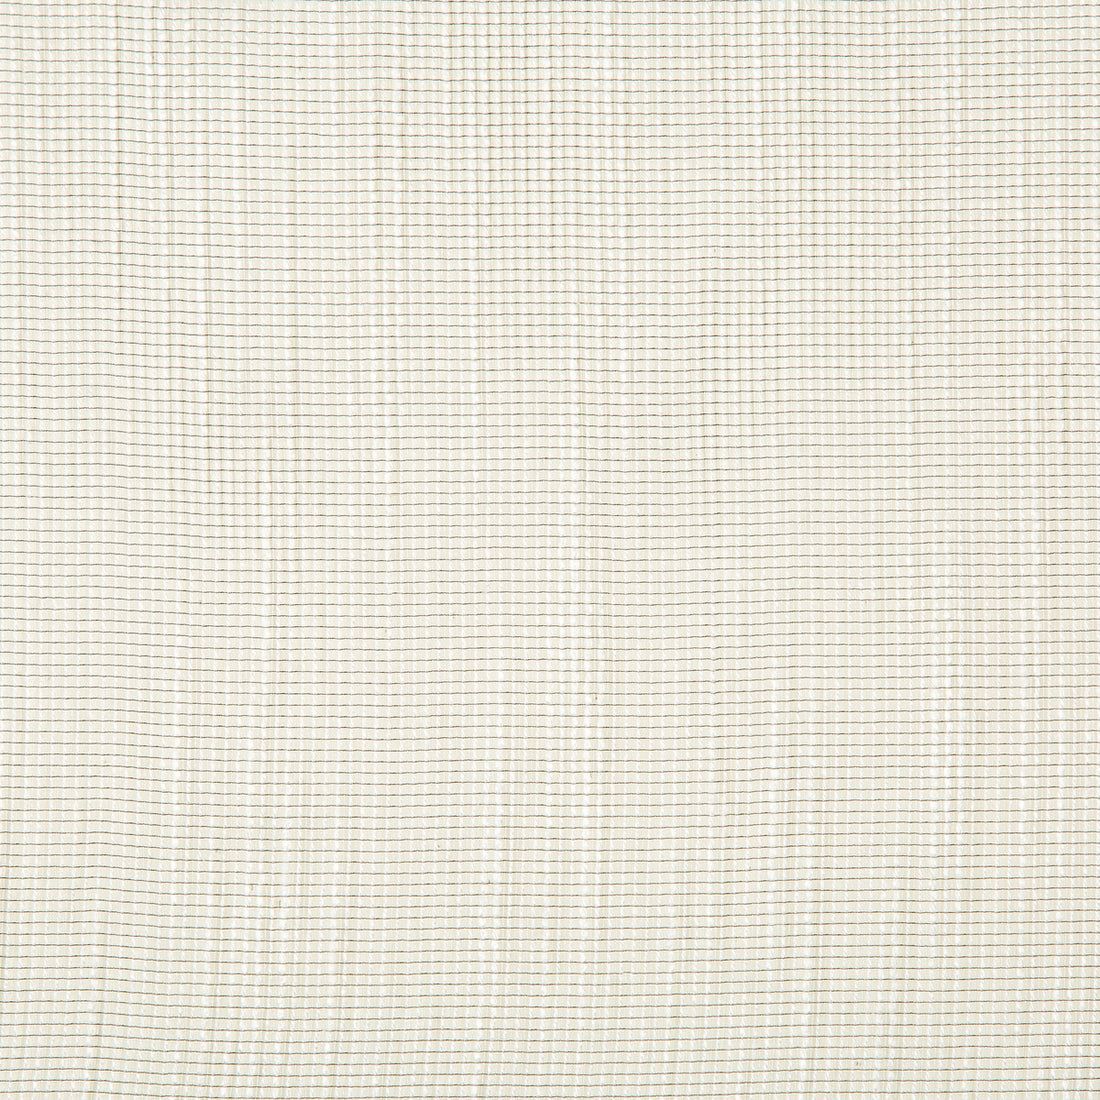 Kravet Design fabric in 4730-11 color - pattern 4730.11.0 - by Kravet Design